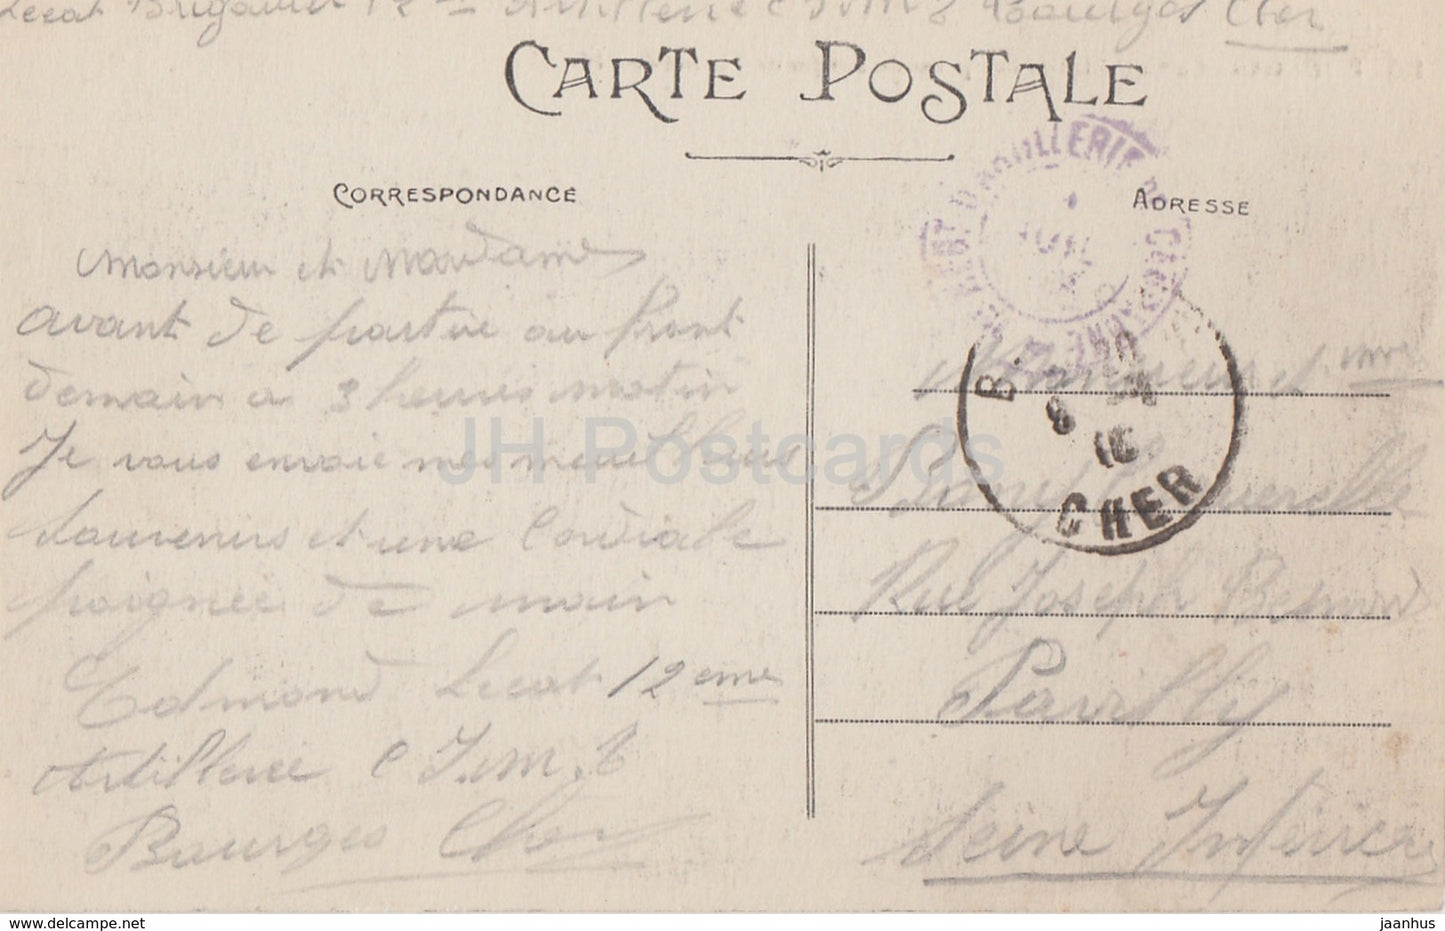 Bourges - La Cathedrale - Vue prise du Jardind l'Hotel de Ville - Kathedrale - 205 - alte Postkarte - Frankreich - gebraucht